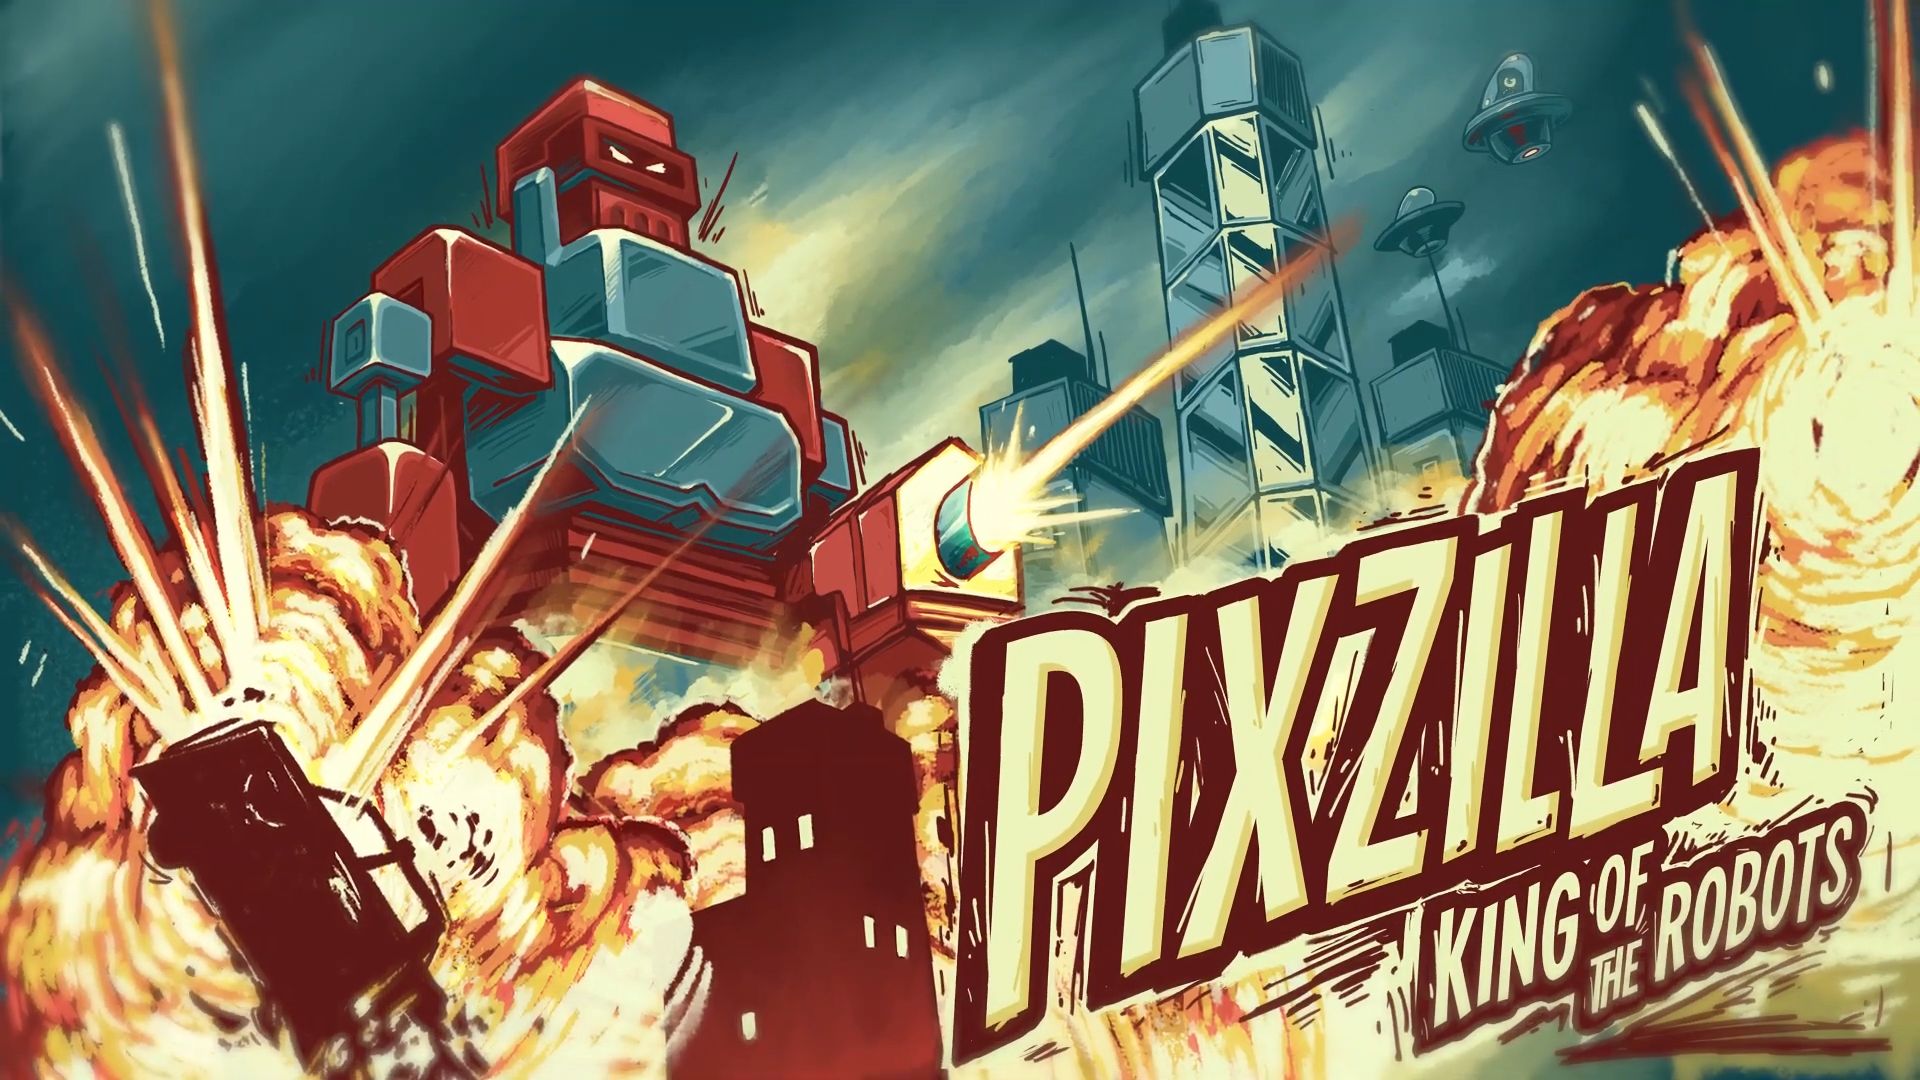 Télécharger Pixzilla / King of the Robots pour Android gratuit.